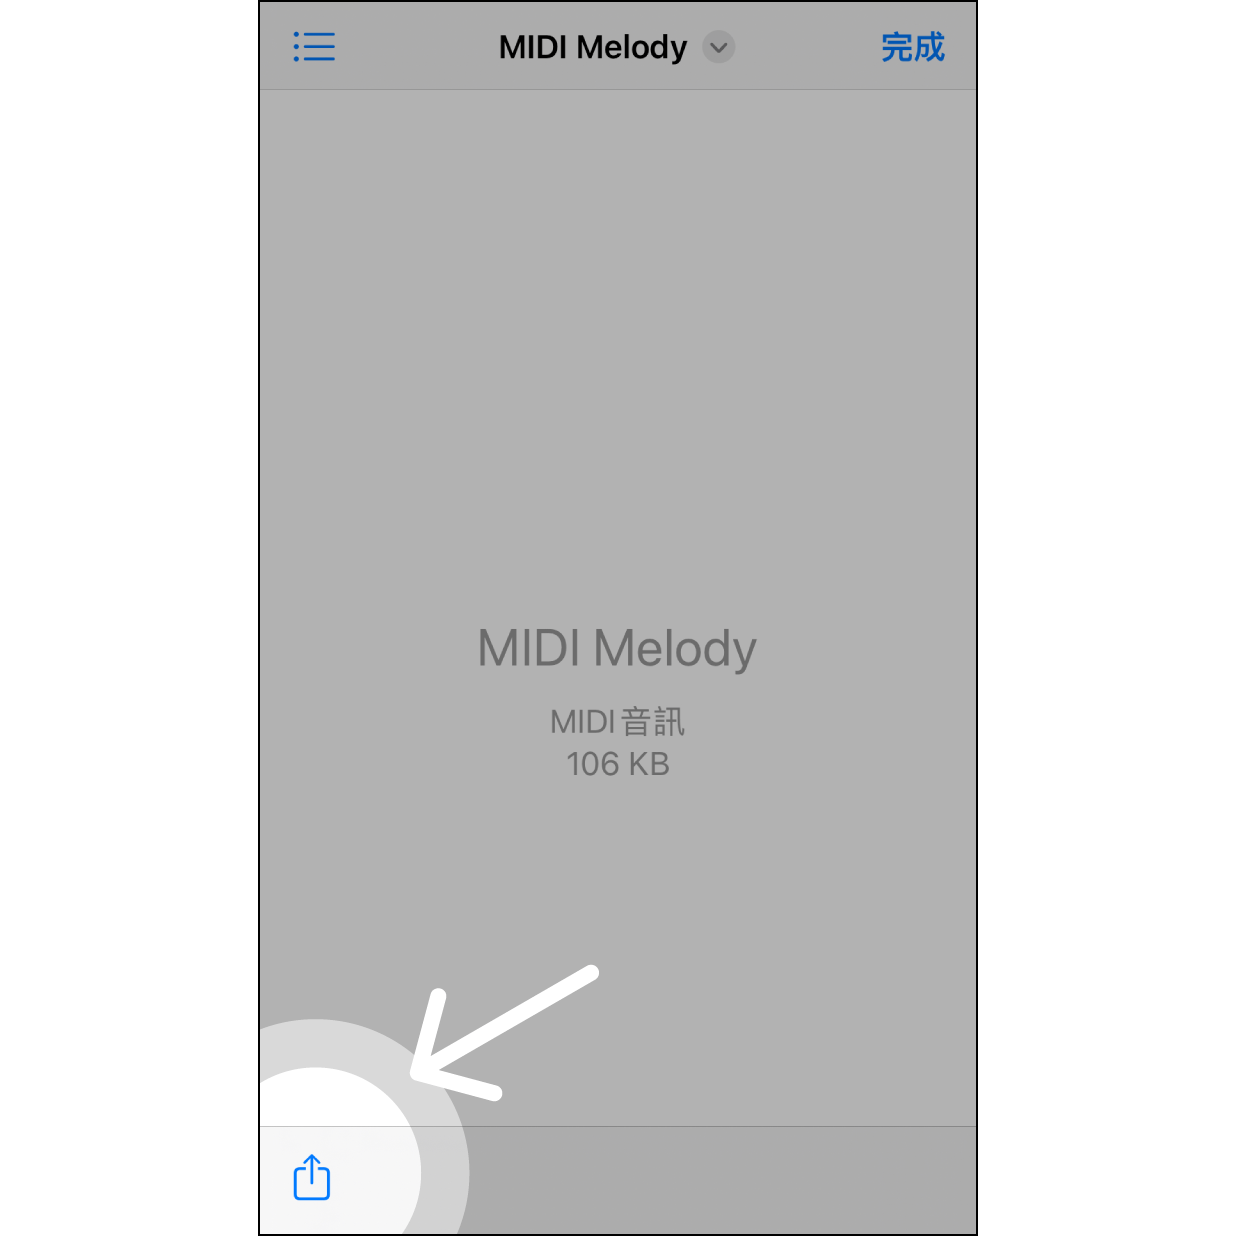 1. 在「檔案」app 分享 進入「檔案」app 選擇 MIDI 檔案後，按左下角「分享」圖示。